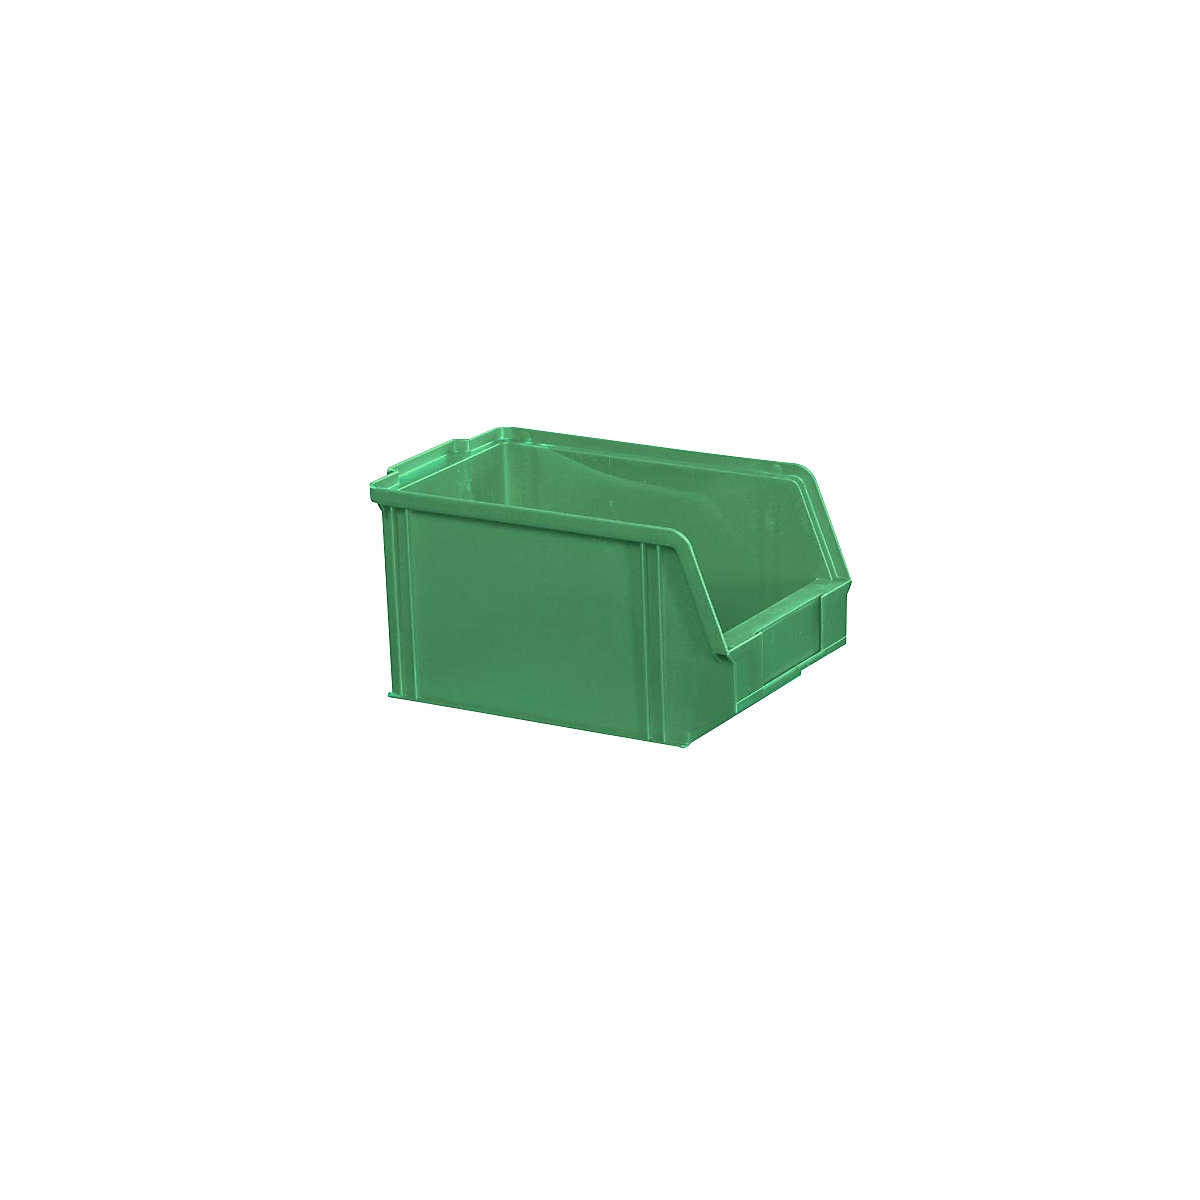 Sichtlagerkasten aus Polystyrol, Länge 230 mm, BxH 146 x 130 mm, VE 60 Stk, grün-12